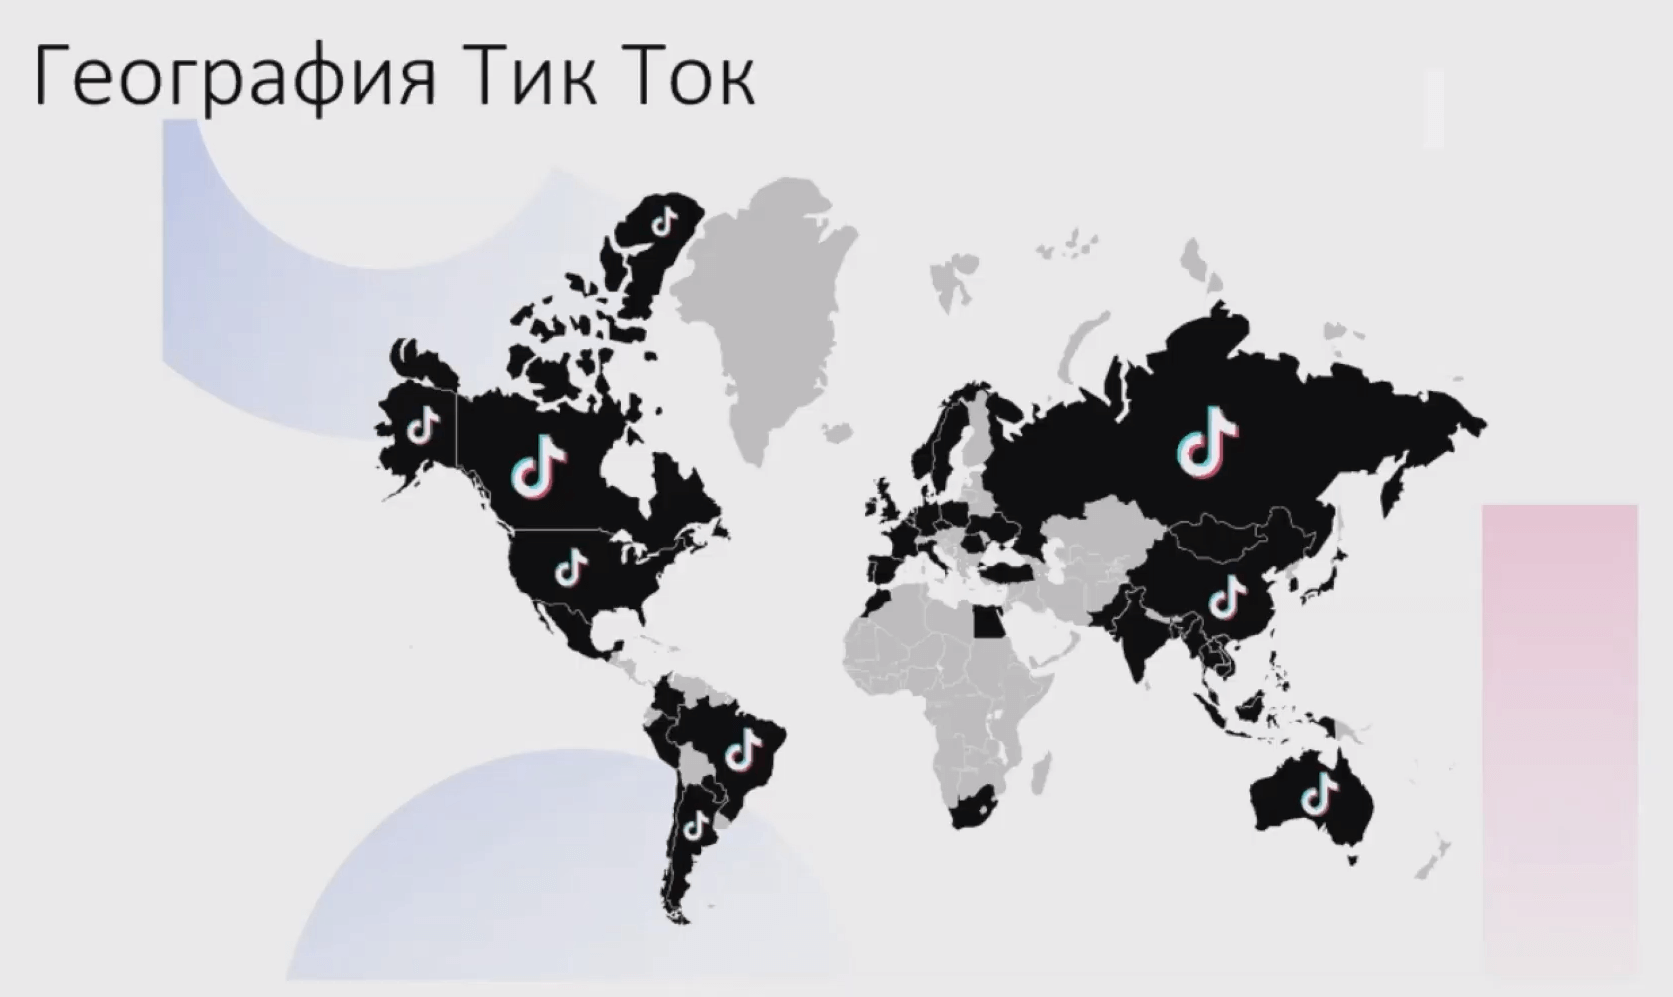 География распространения ТикТока